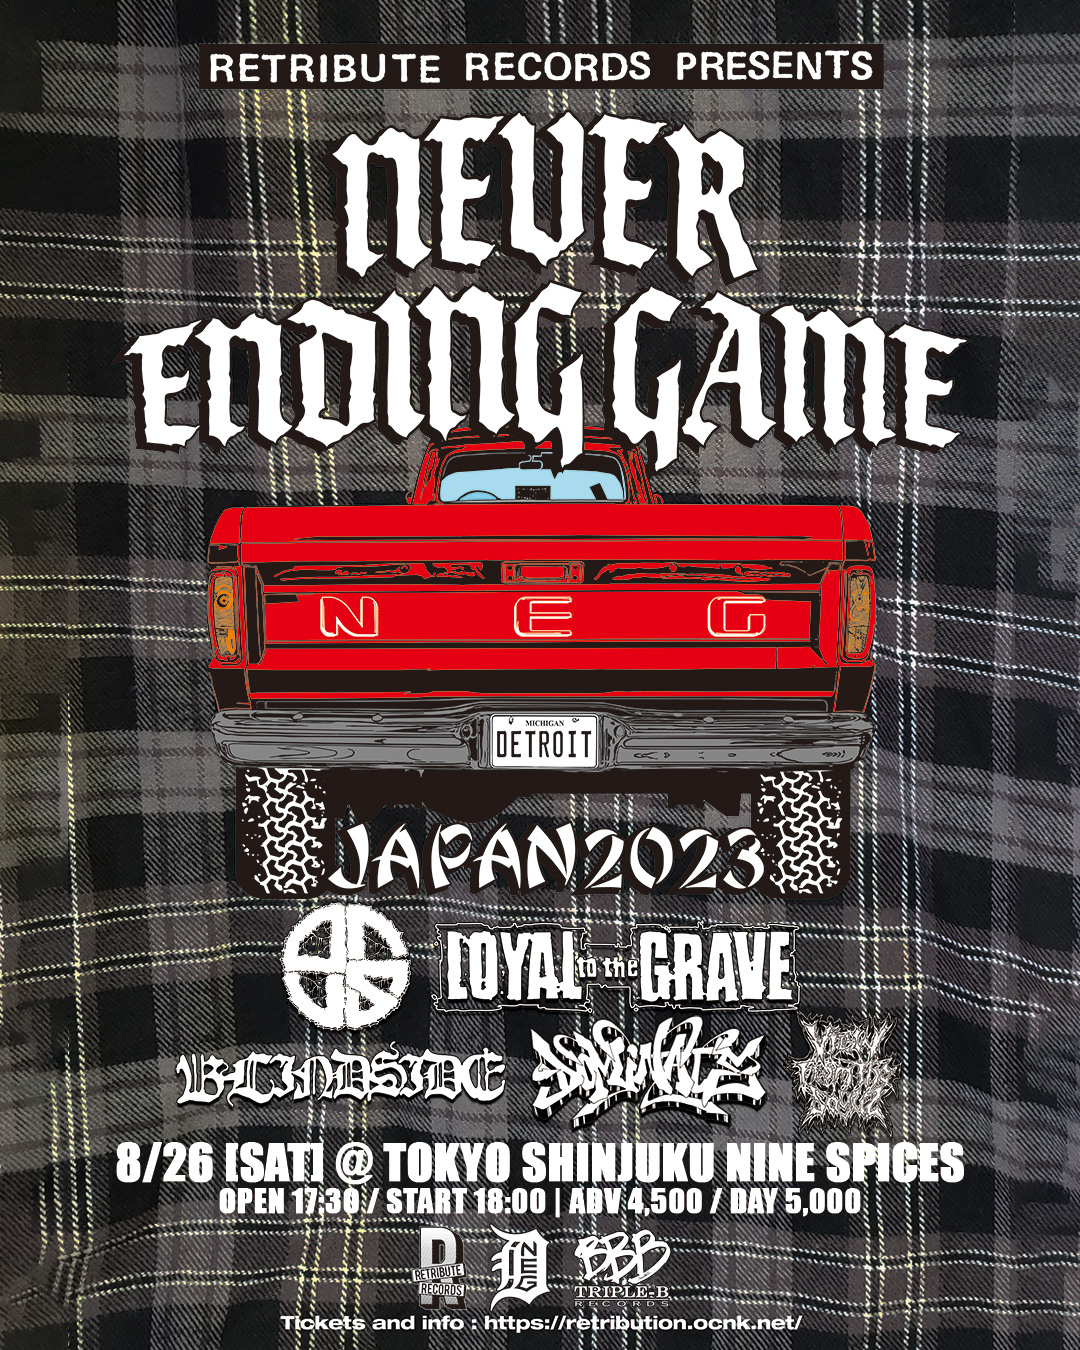 Retriburte Records Presents Retribute Tour 2023 "NEVER ENDING GAME Japan Tour 2023"